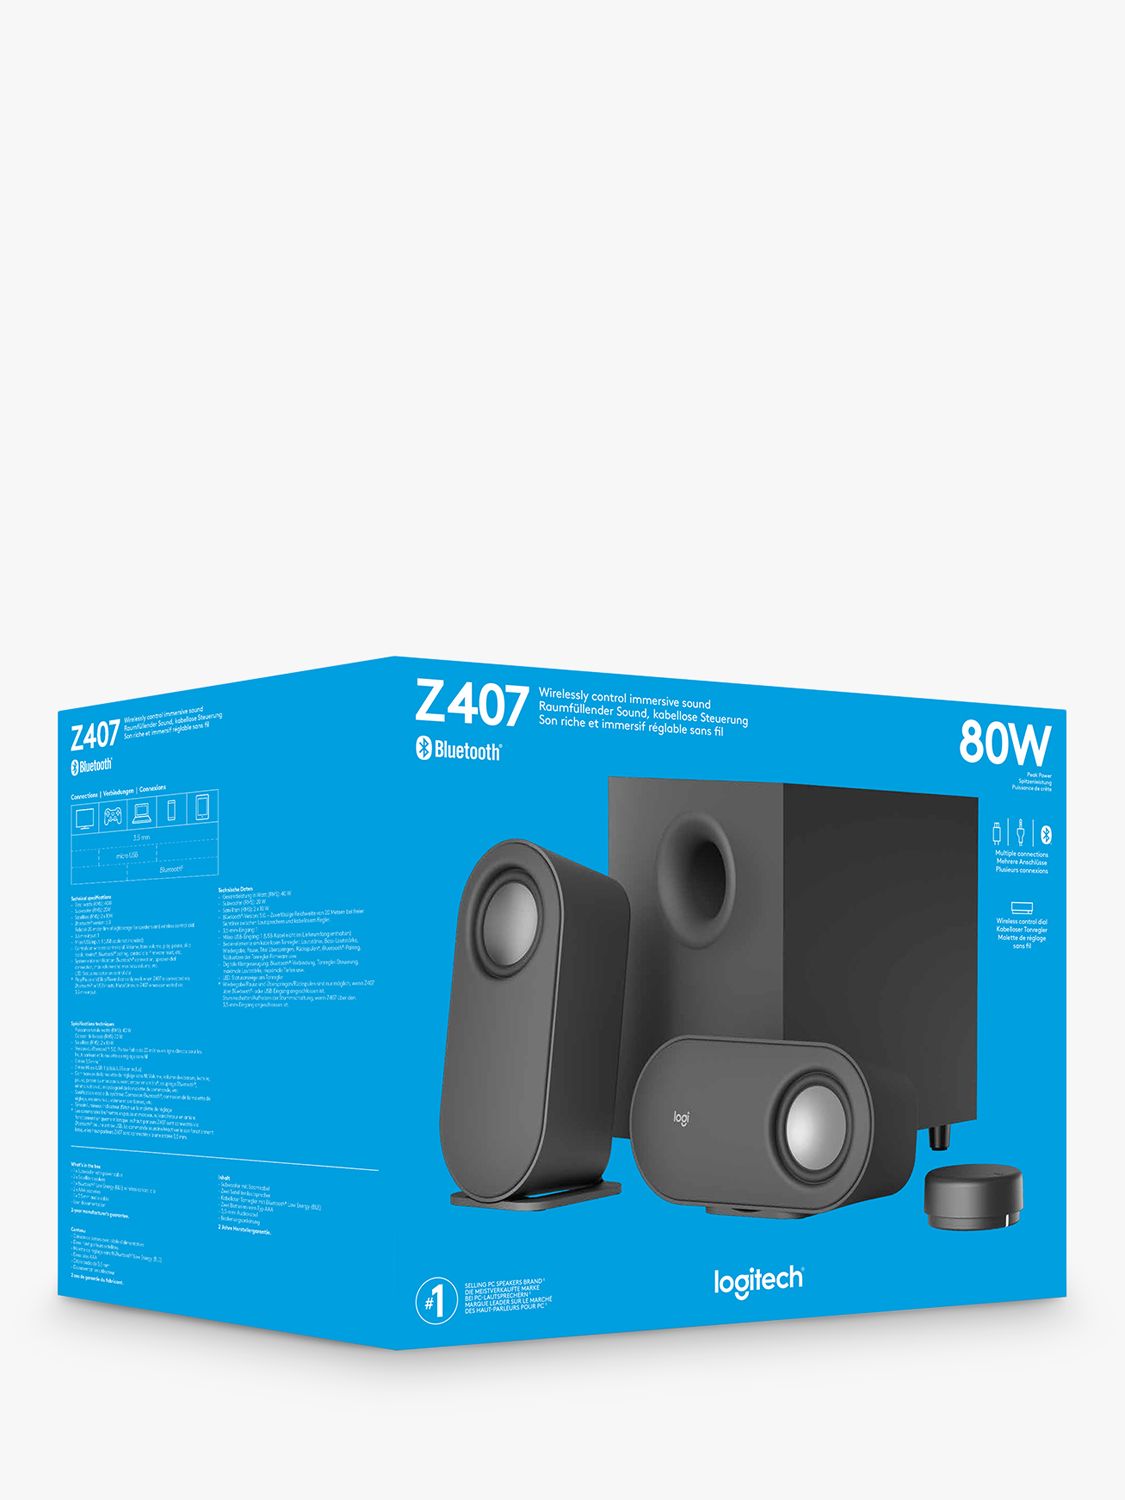 The TinkerPro Logitech Z407 Bluetooth Speaker Mount : r